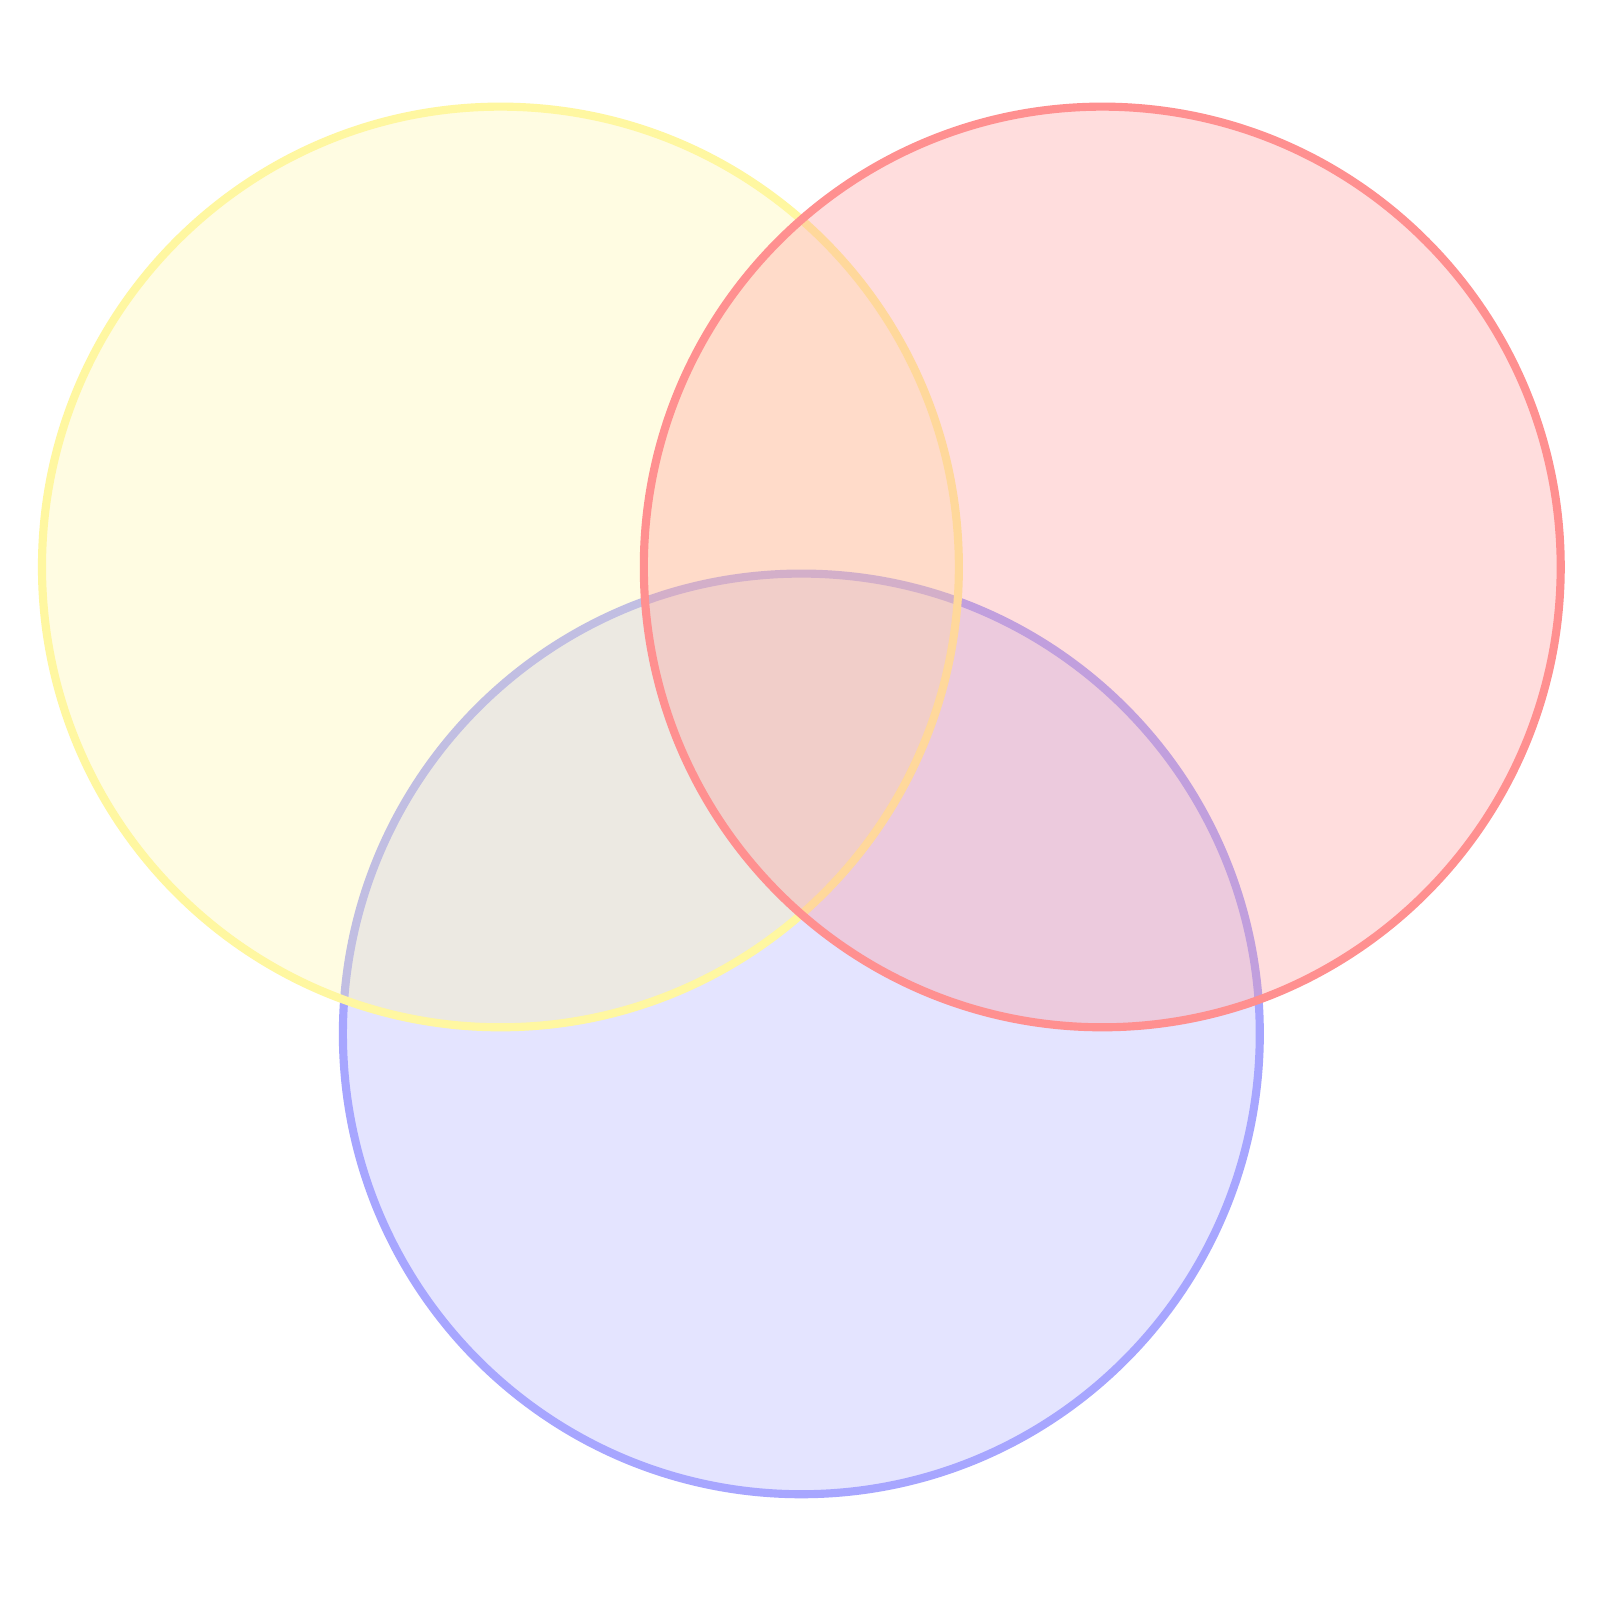 modello di diagramma di venn a 3 cerchi